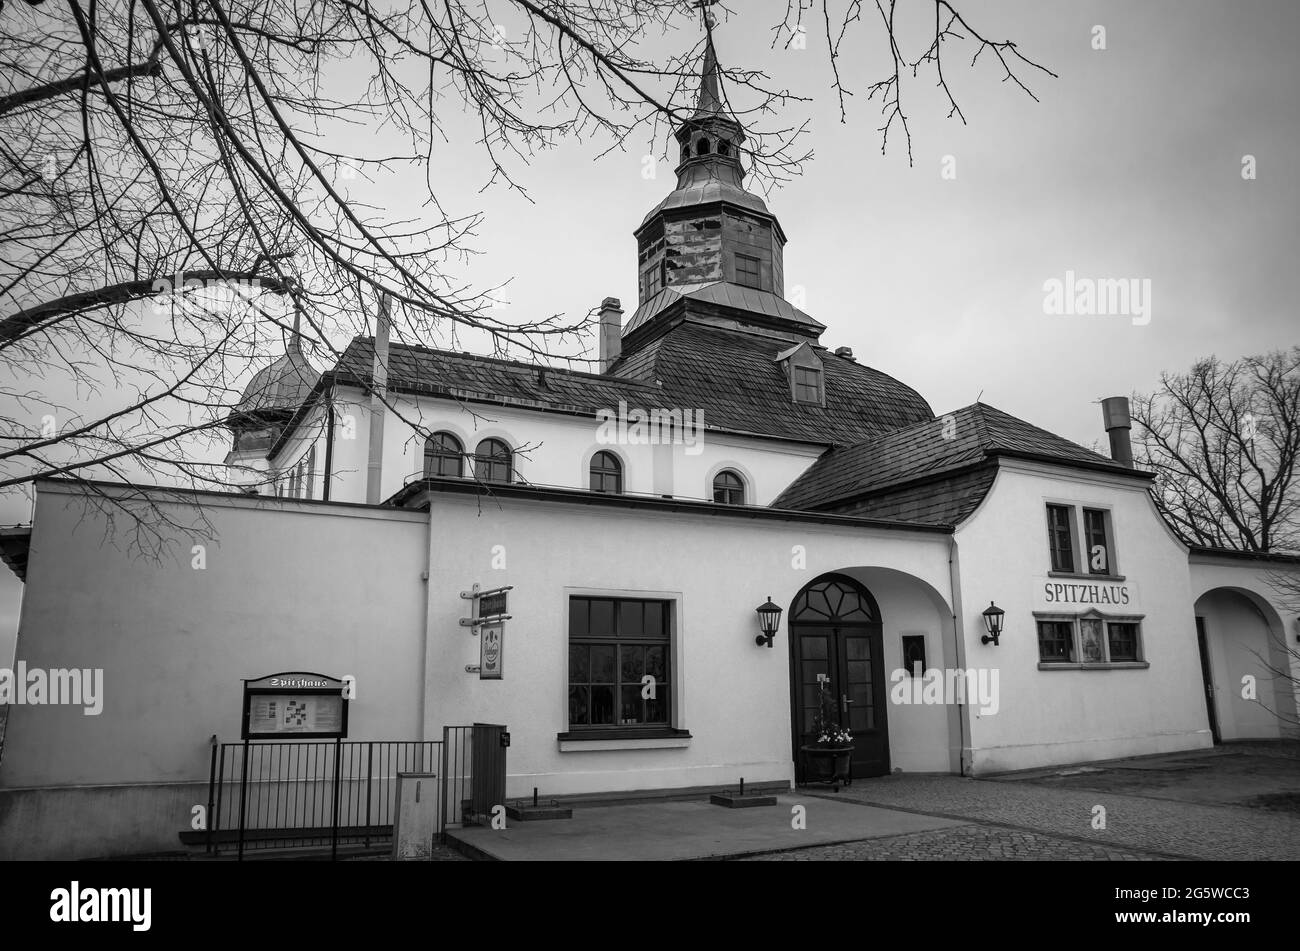 Das Spitzhaus, eine ehemalige Lusthütte aus dem 17. Jahrhundert und heute ein beliebtes Ausflugsrestaurant, in Radebeul, Sachsen, Deutschland. Stockfoto